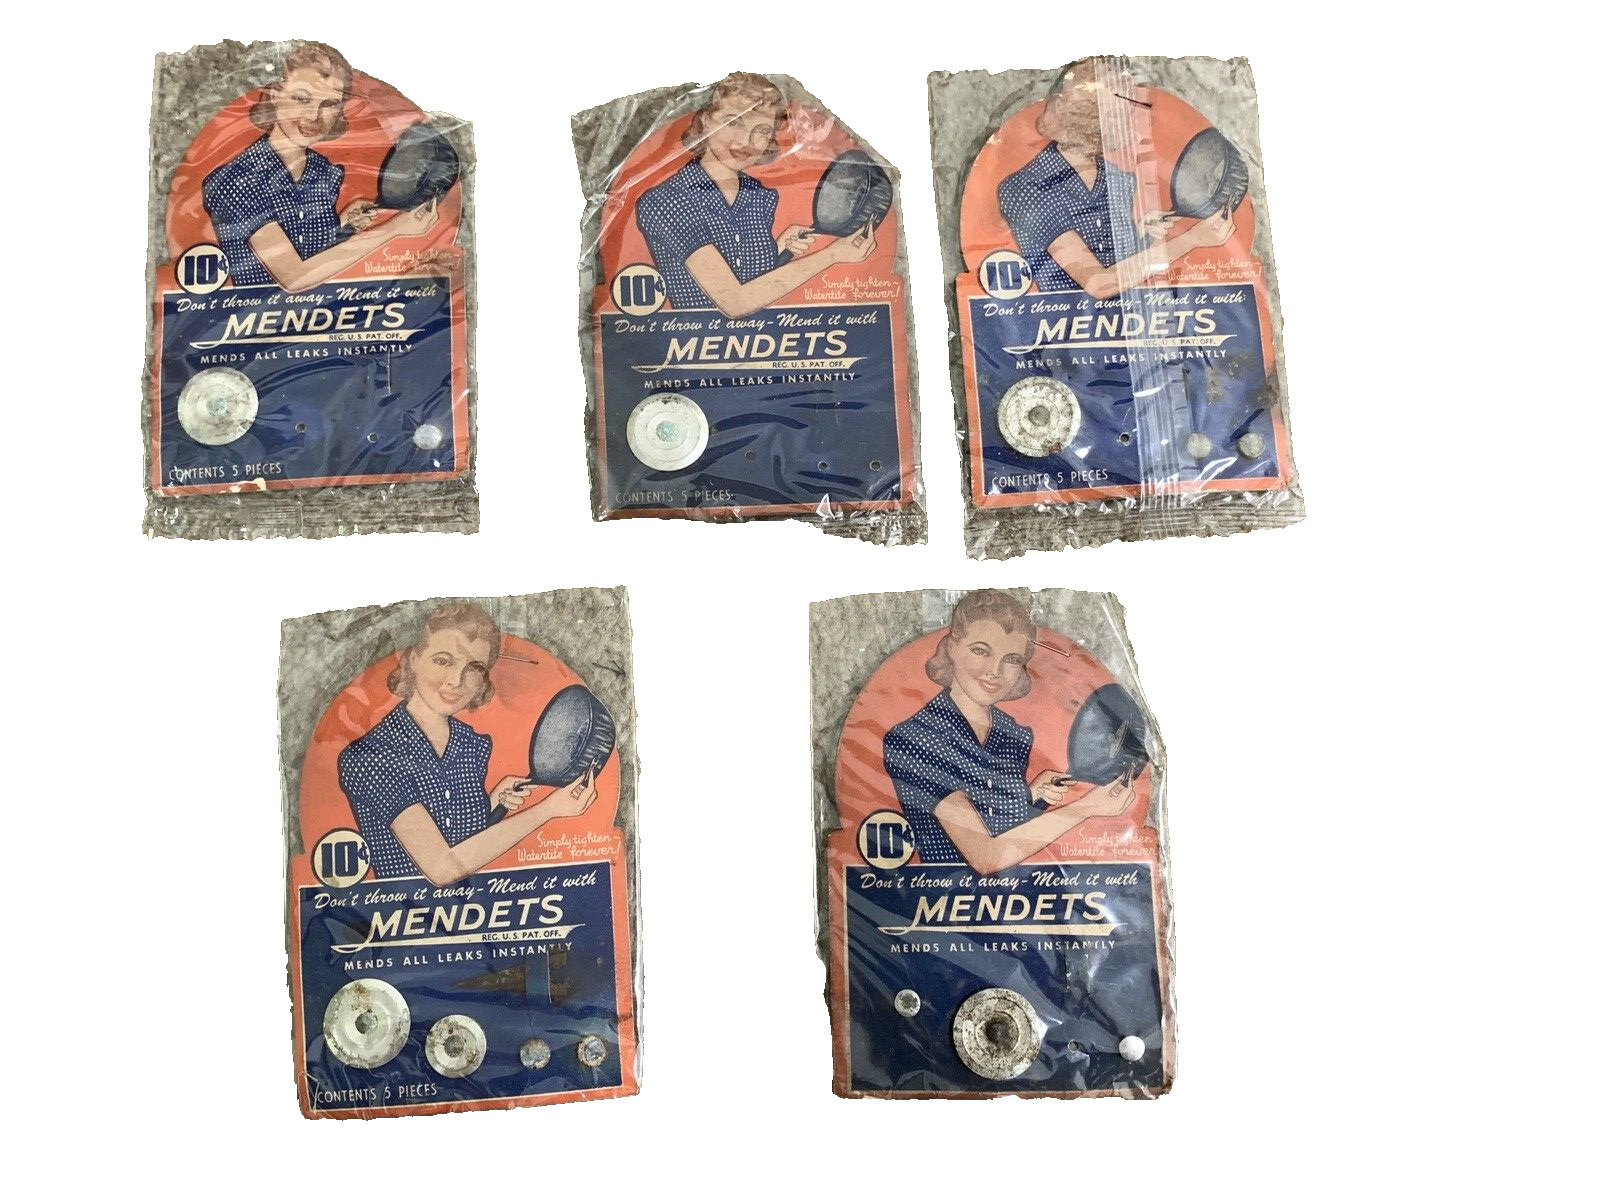 5 cards of Vintage Mendets Kit Mends Pots & Pans Collette Mfg